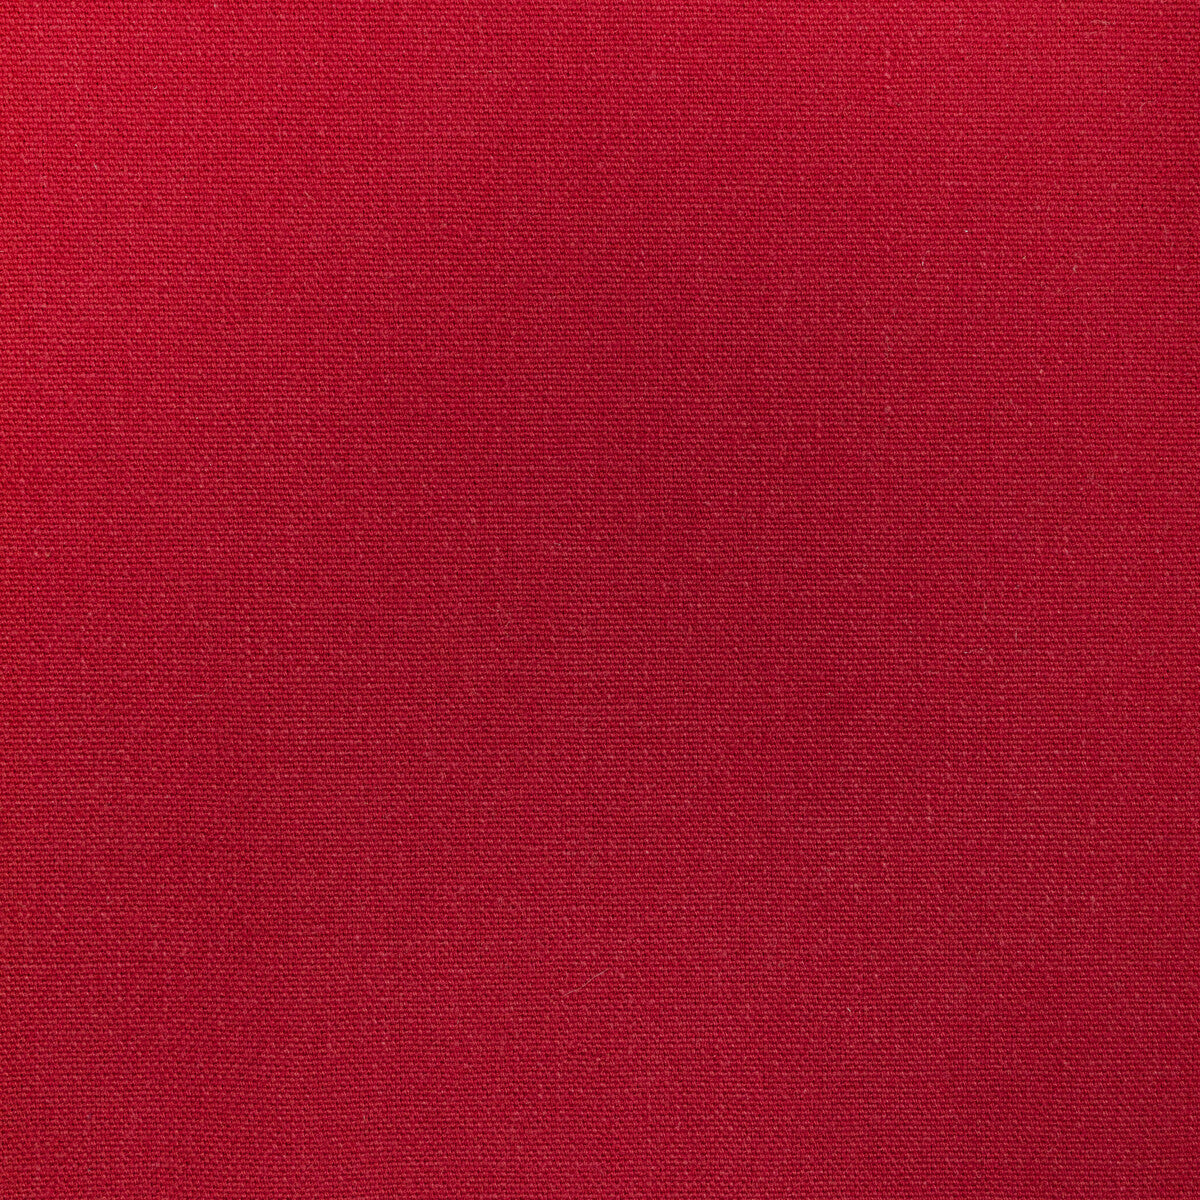 Kravet Basics fabric in 36656-9 color - pattern 36656.9.0 - by Kravet Basics